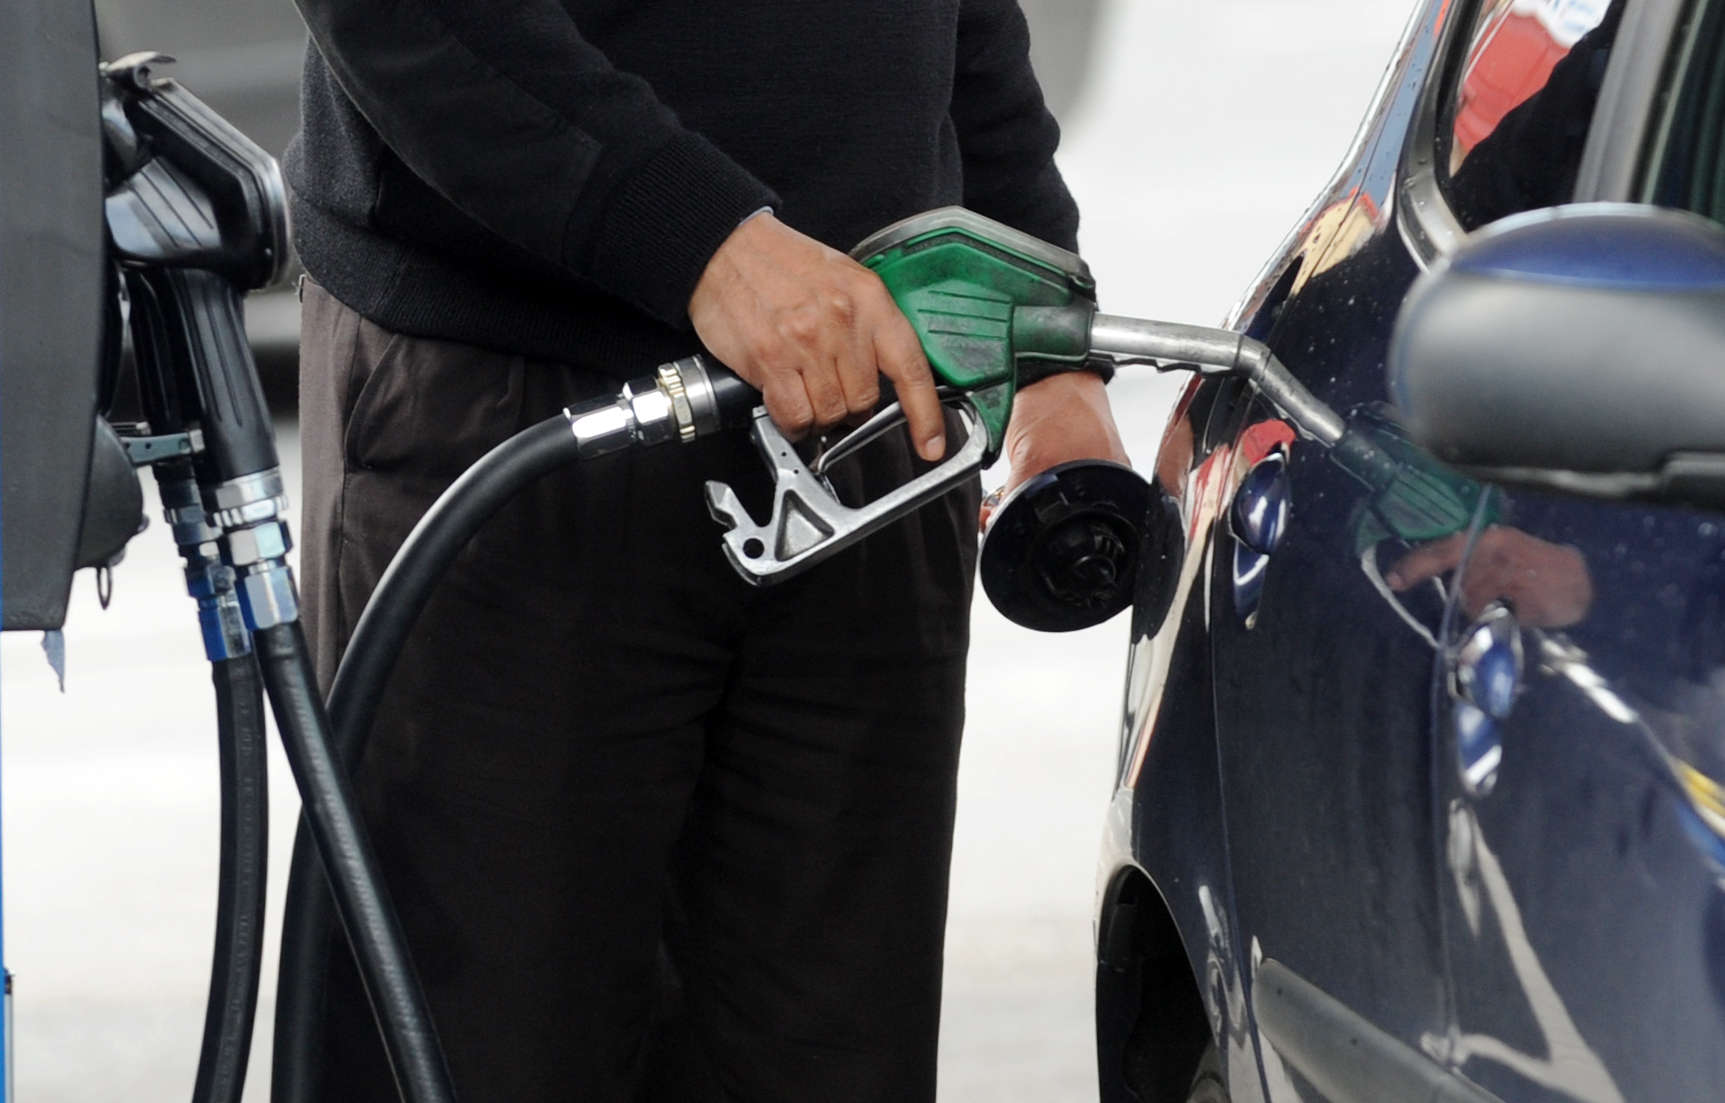 A man puts petrol into his car in April 2012